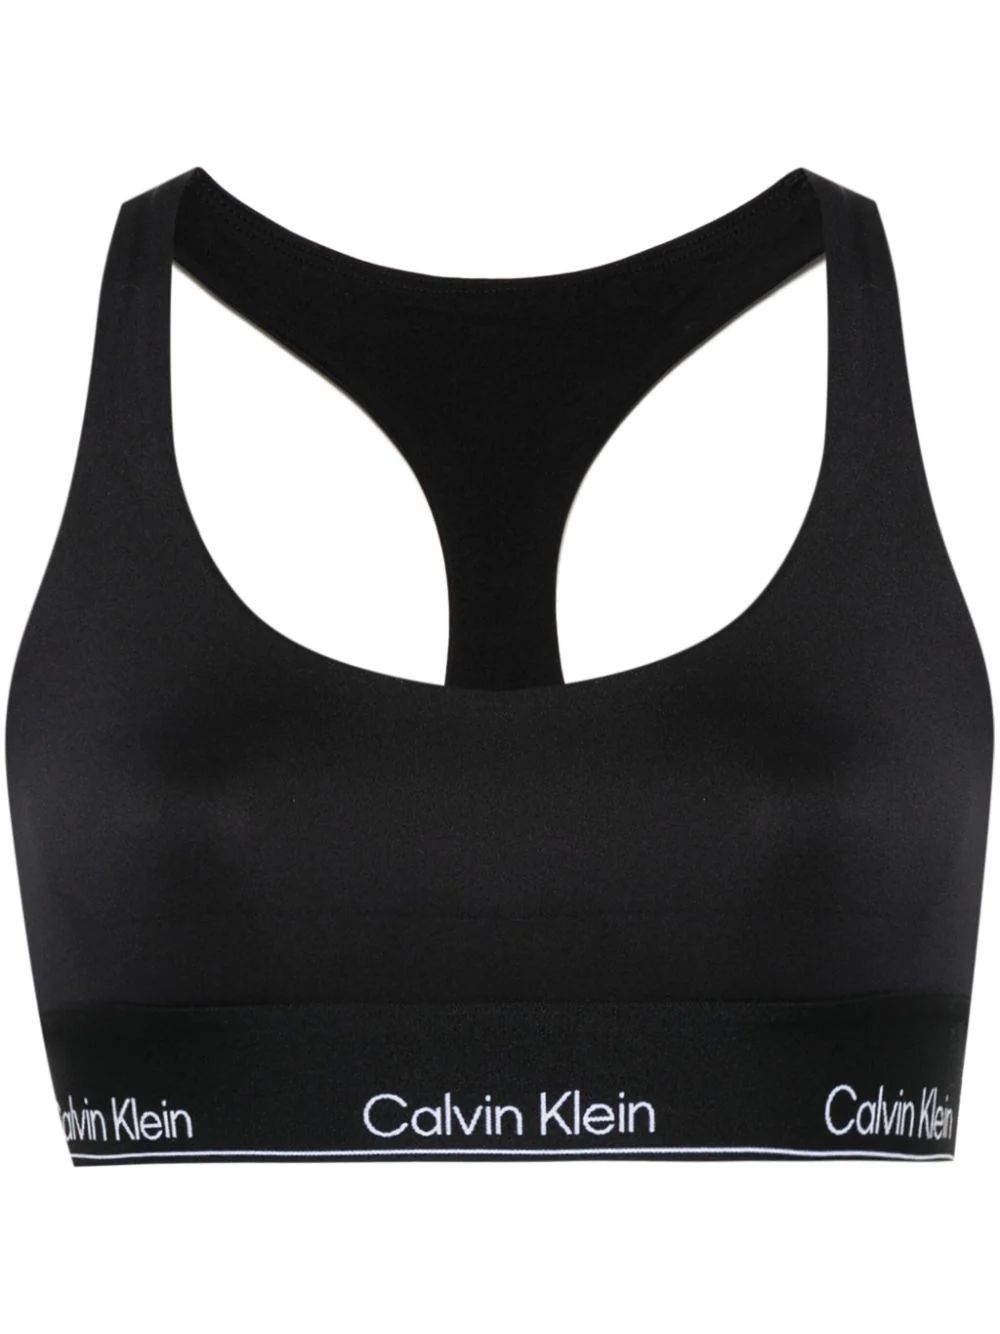 Calvin Klein logo-underband Performance Top - Farfetch | Farfetch Global